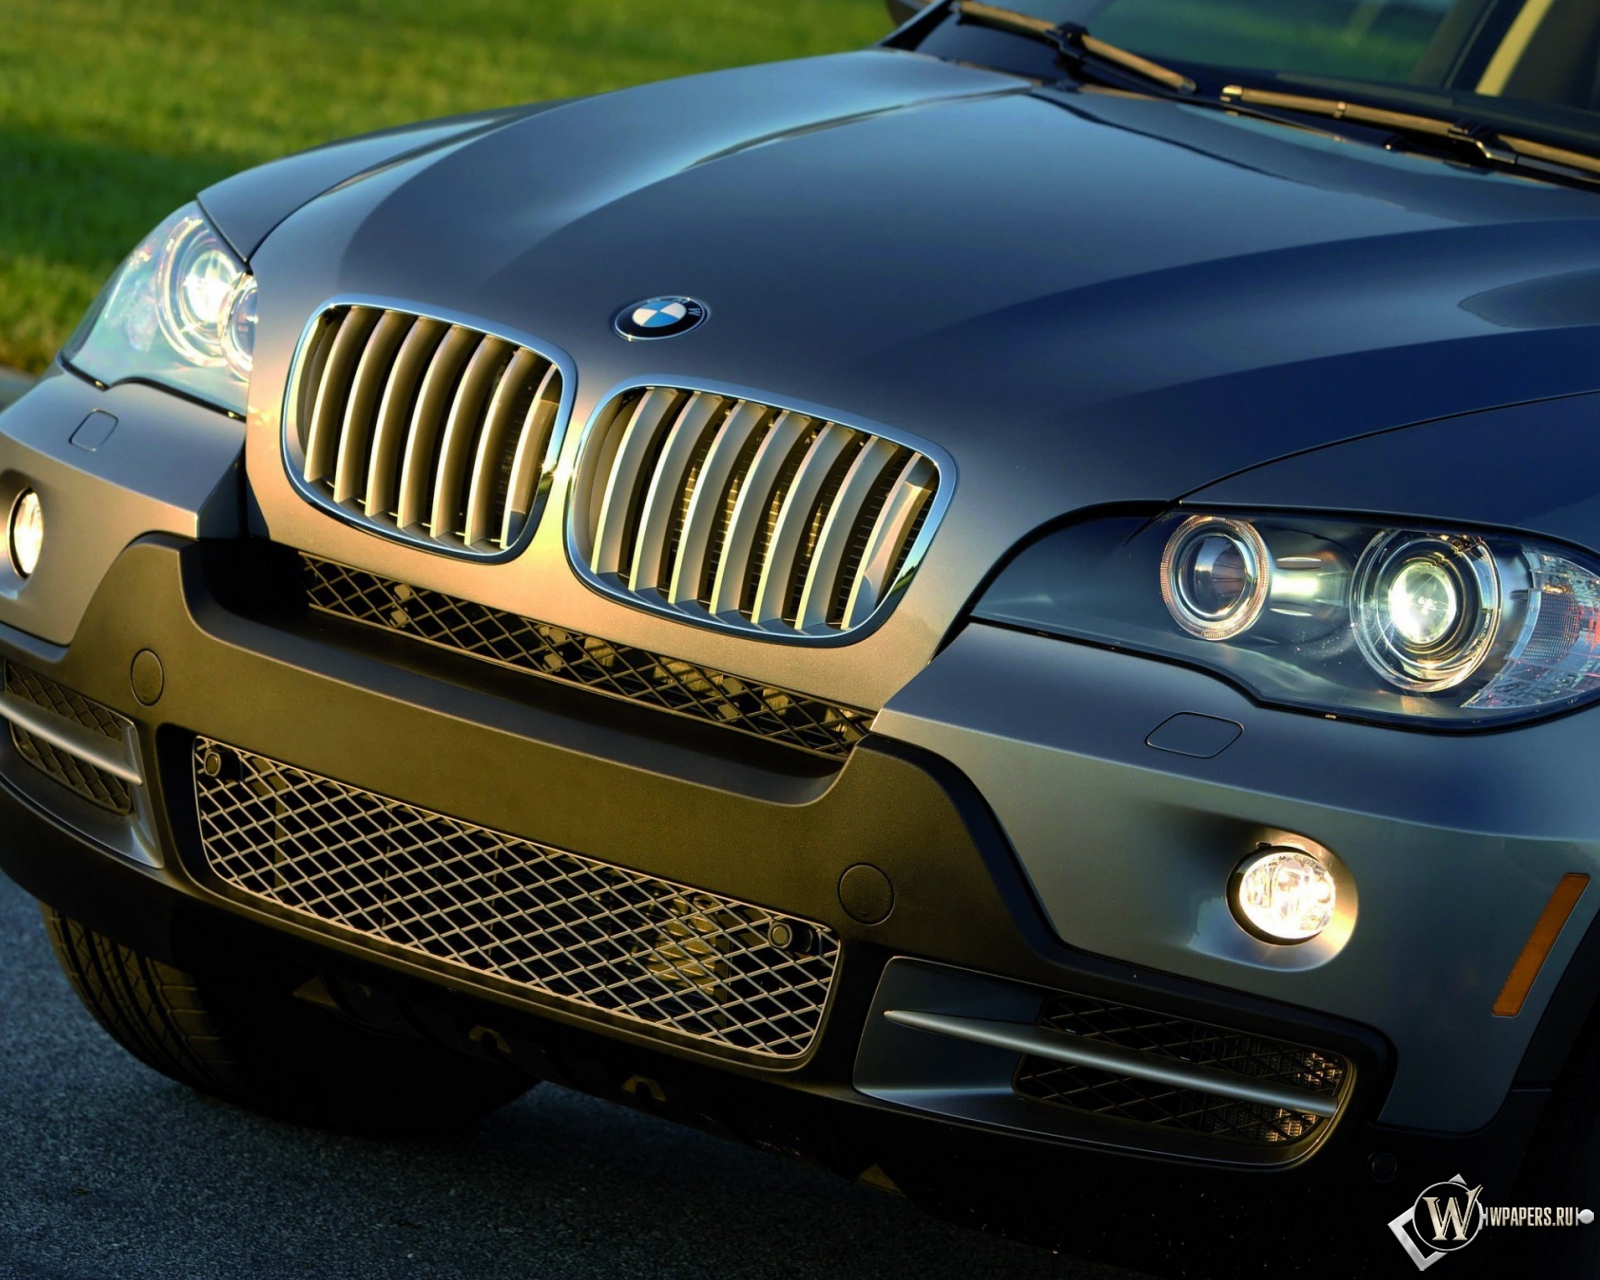 BMW X5 (2007) 1600x1280